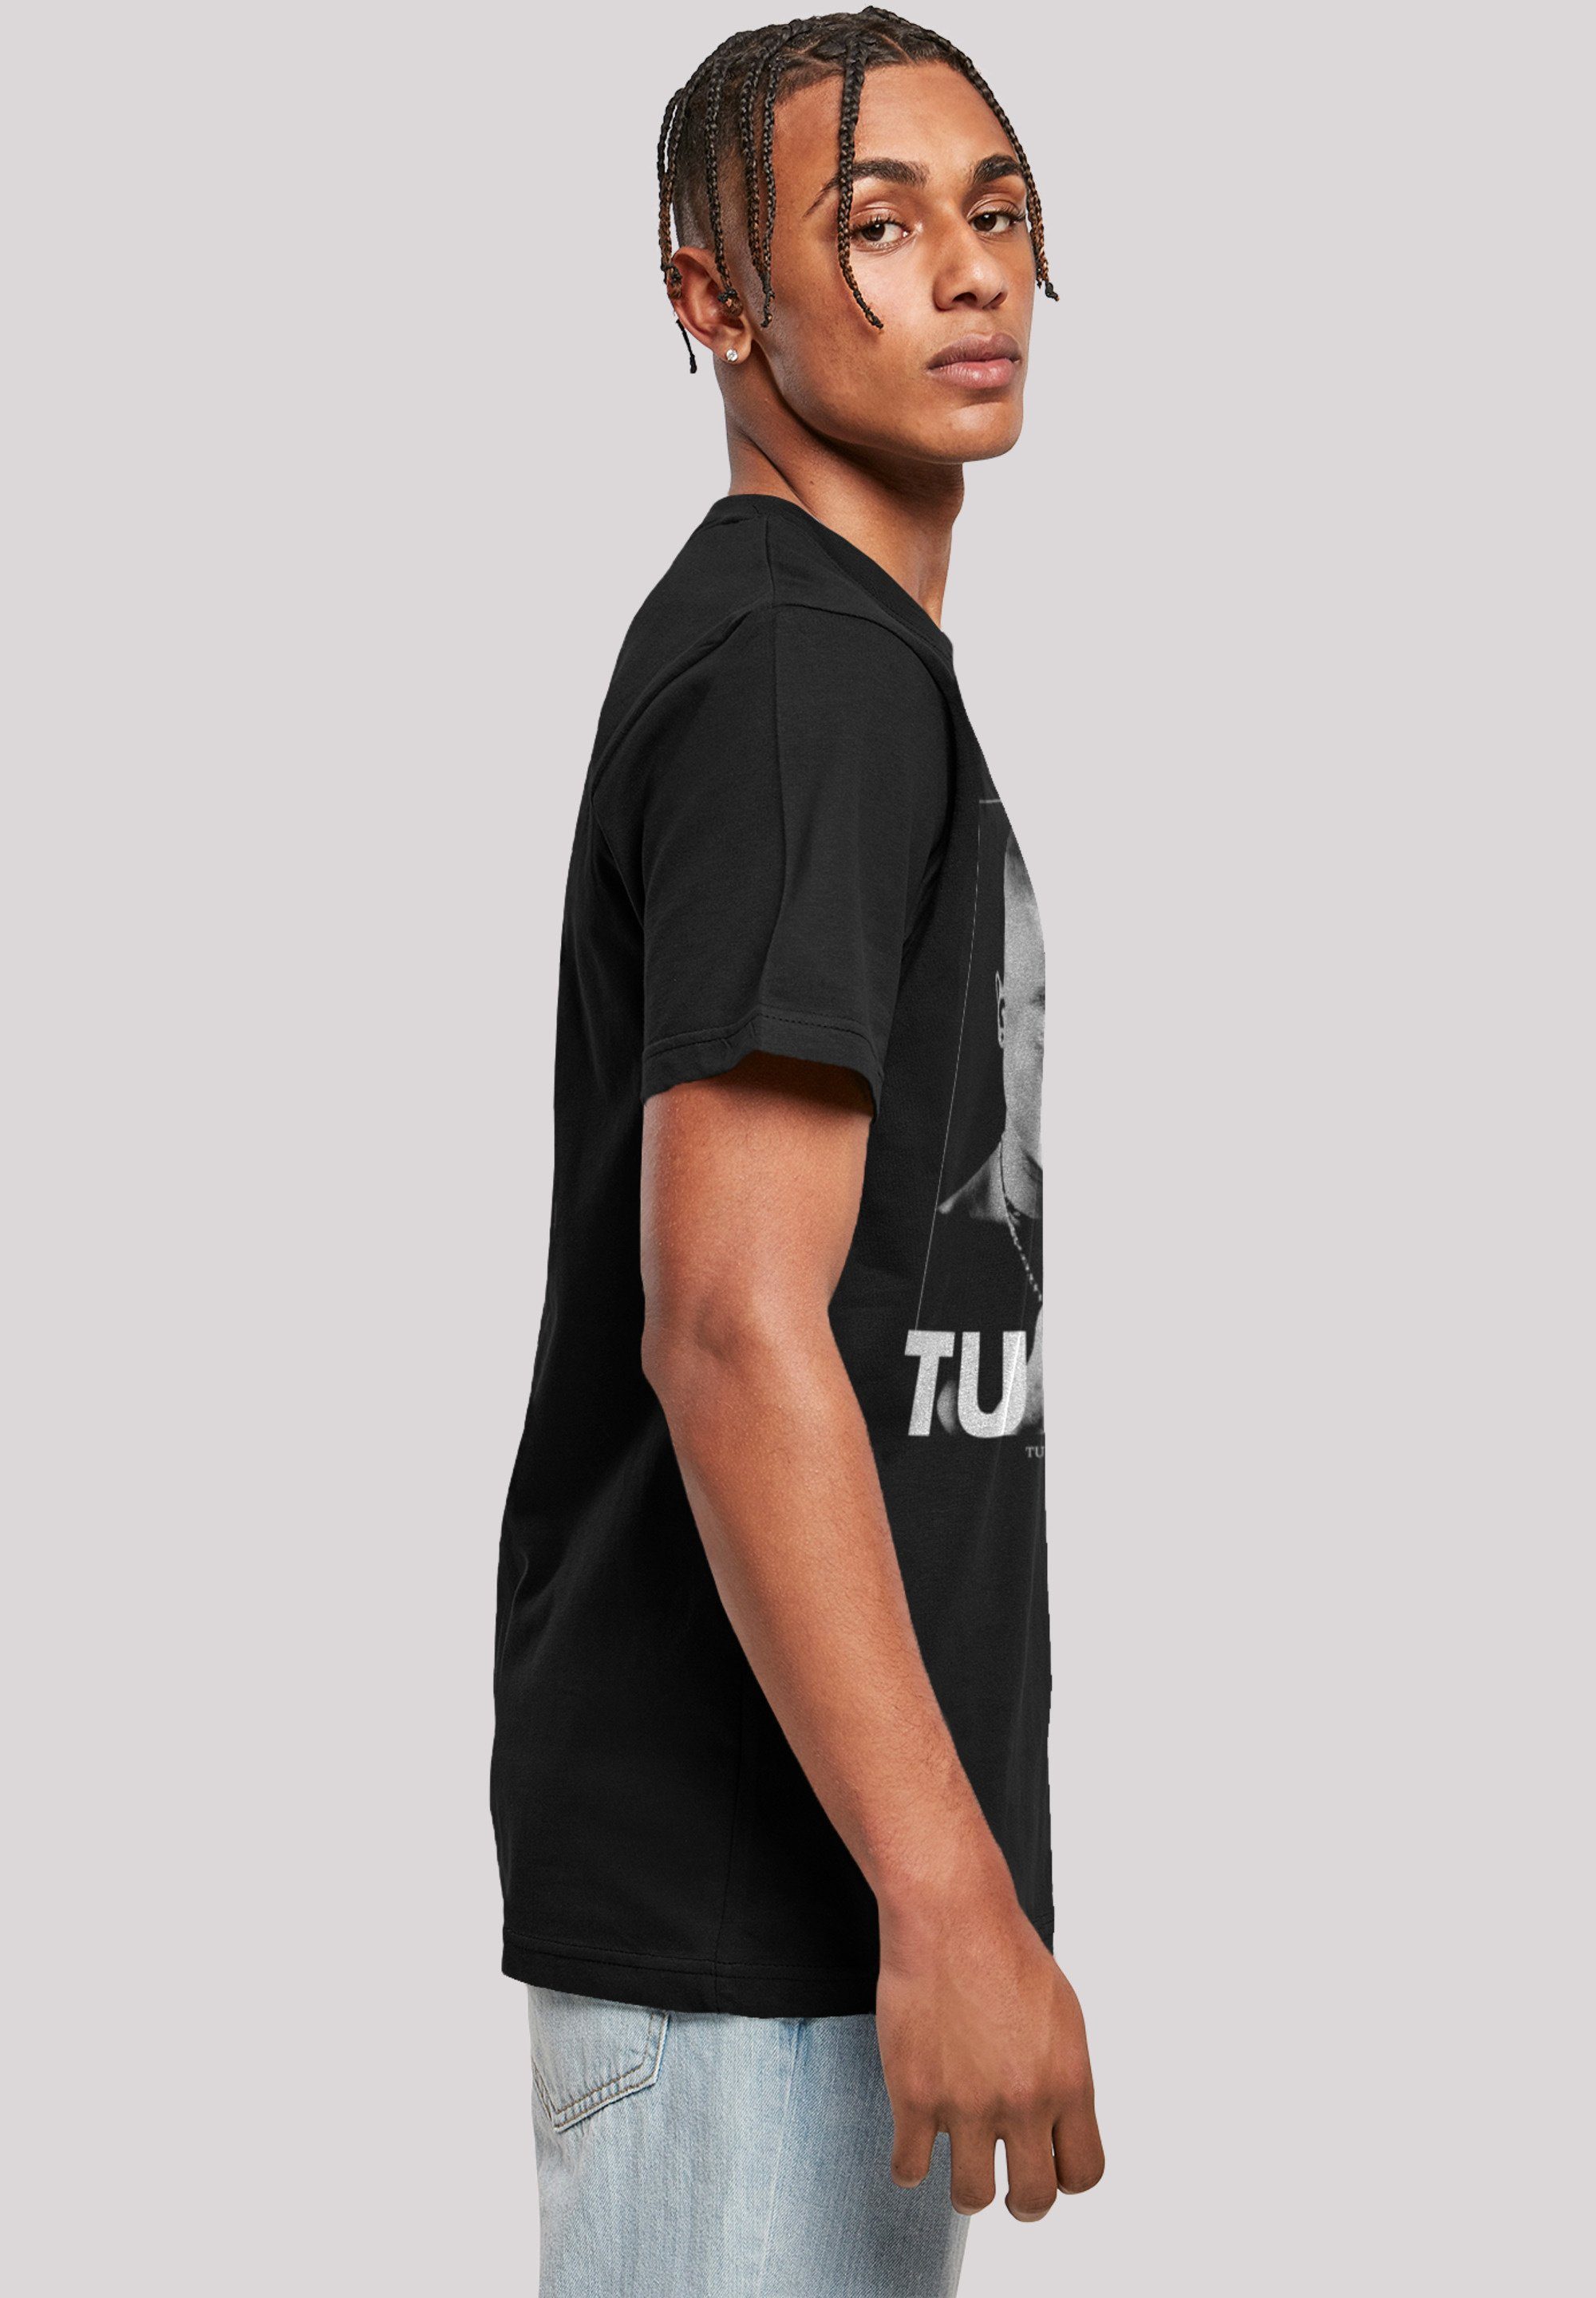 F4NT4STIC Print Shakur T-Shirt Praying Tupac